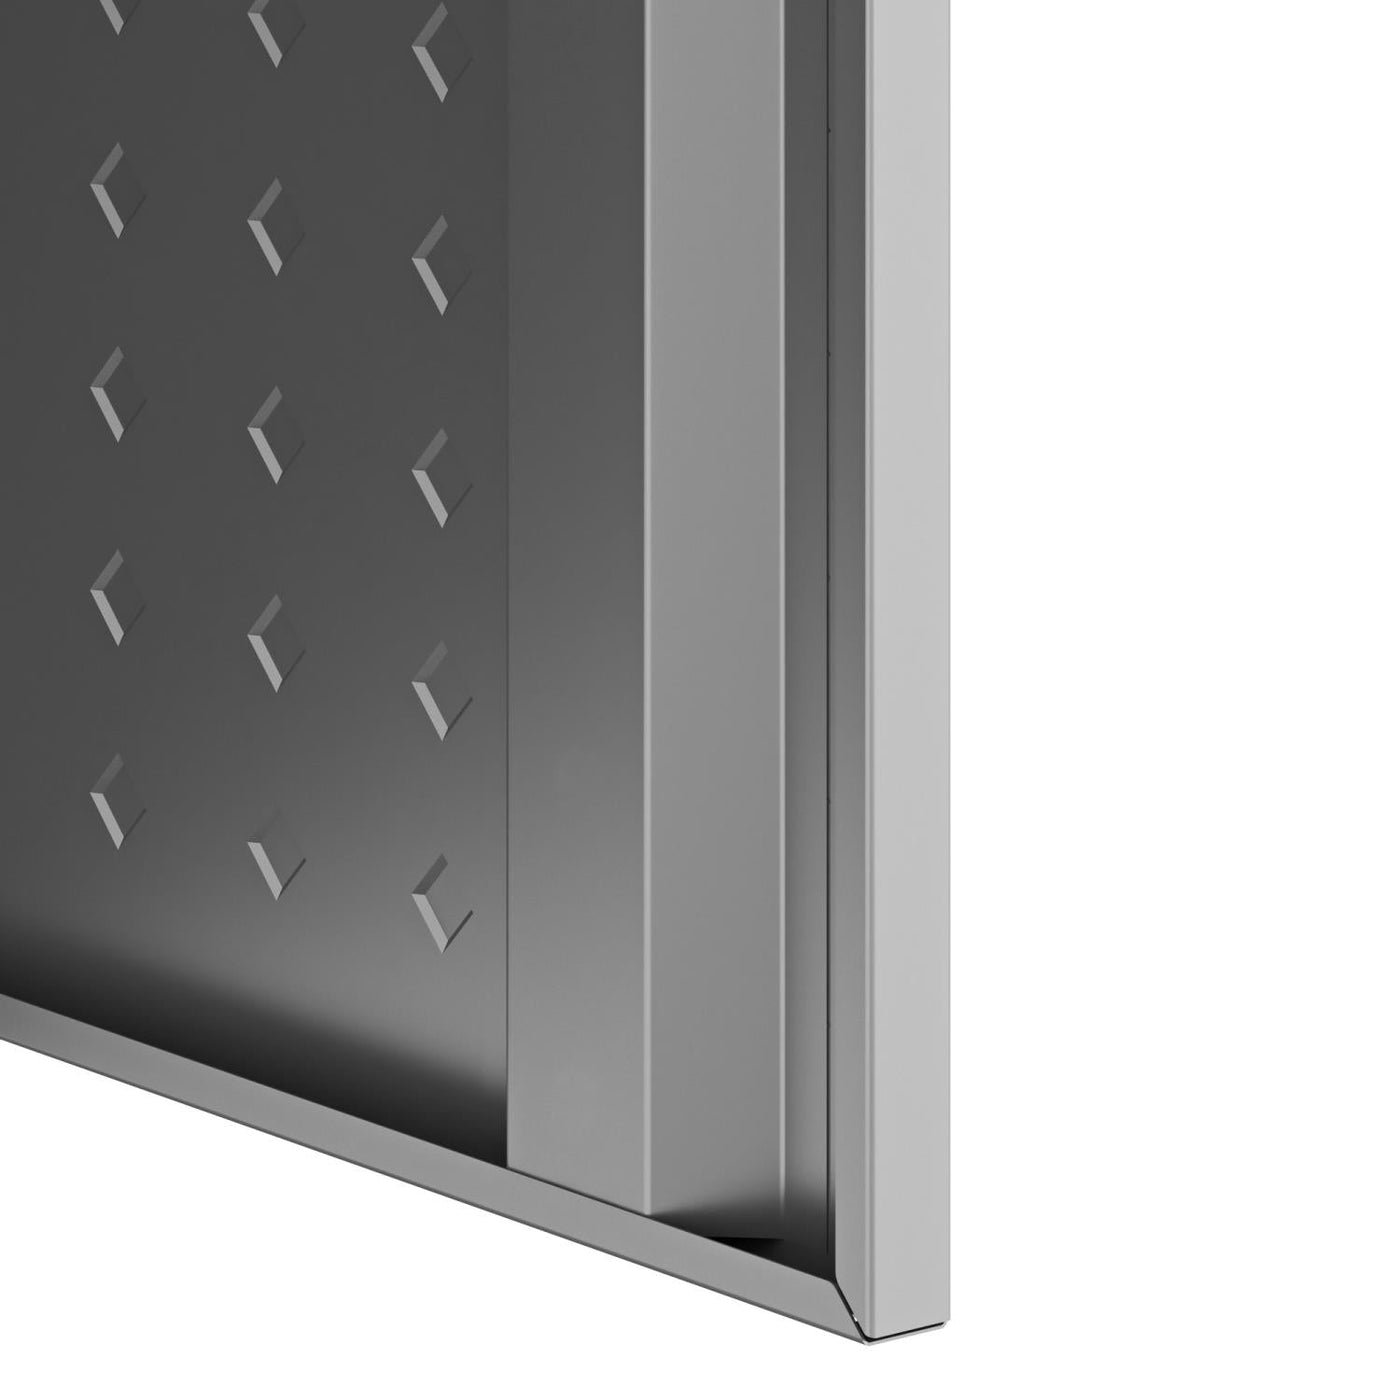 Maximus 6-Piece Carbon Steel Garage Storage Package